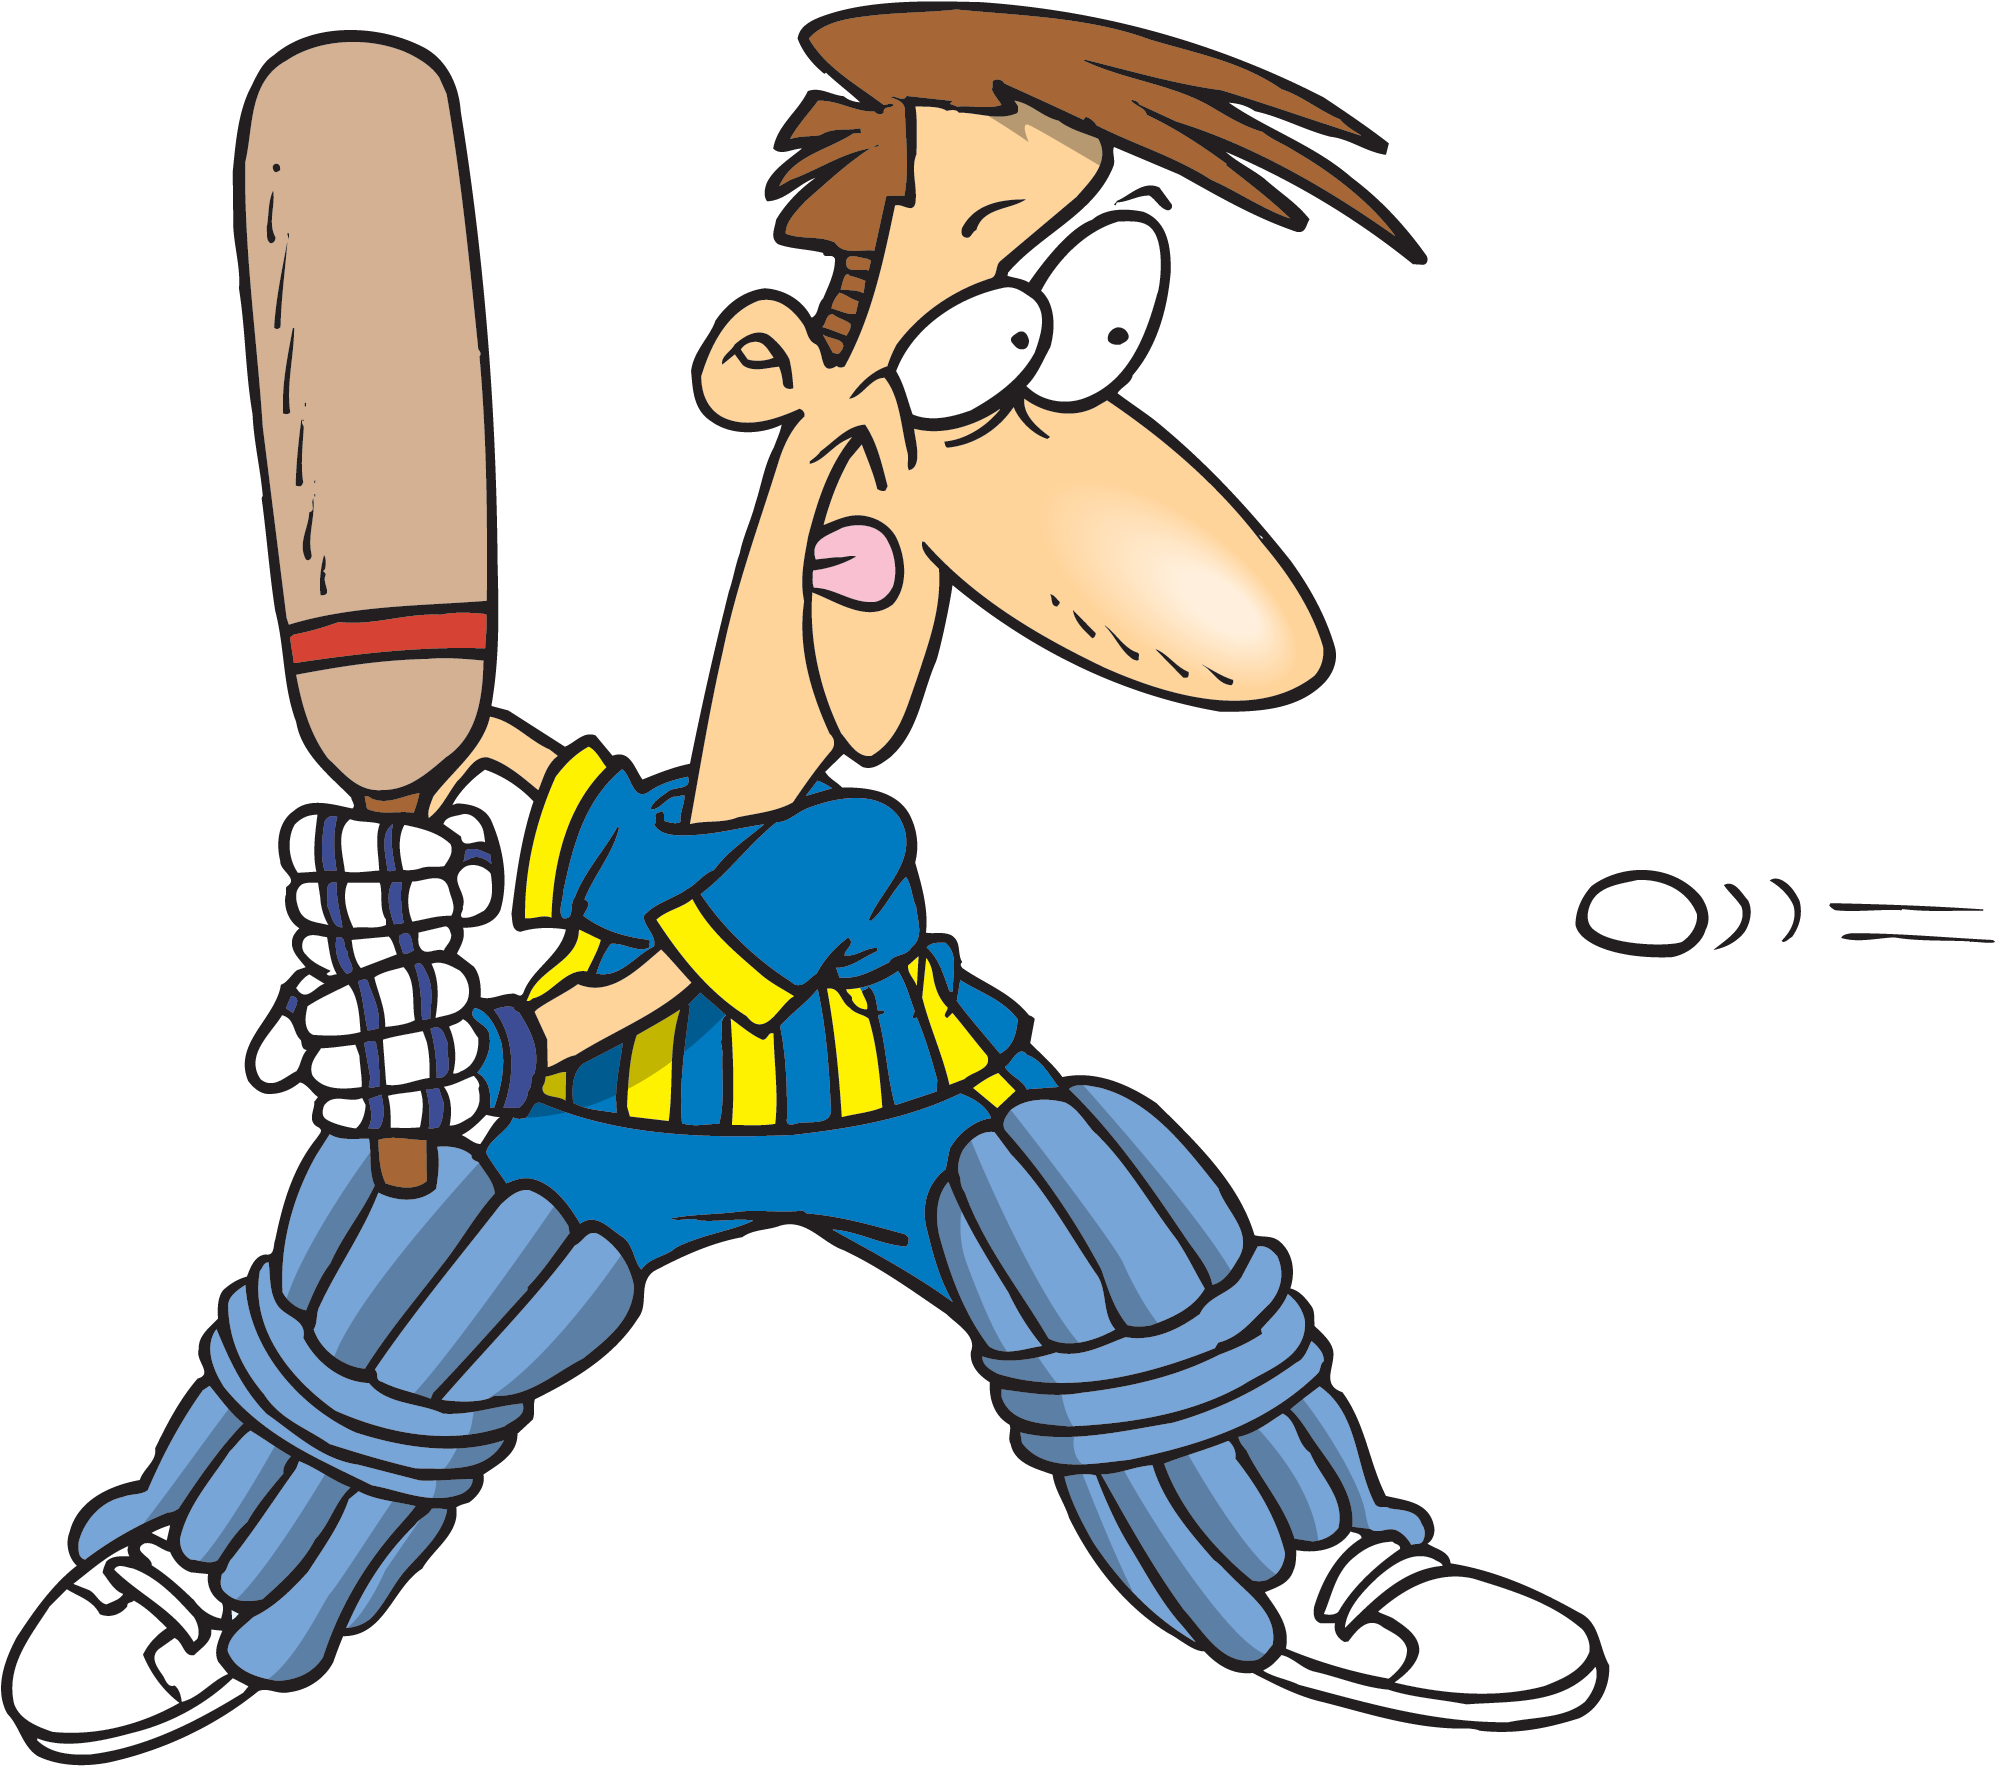  Cricket clipart  cricket  man Cricket  cricket  man 